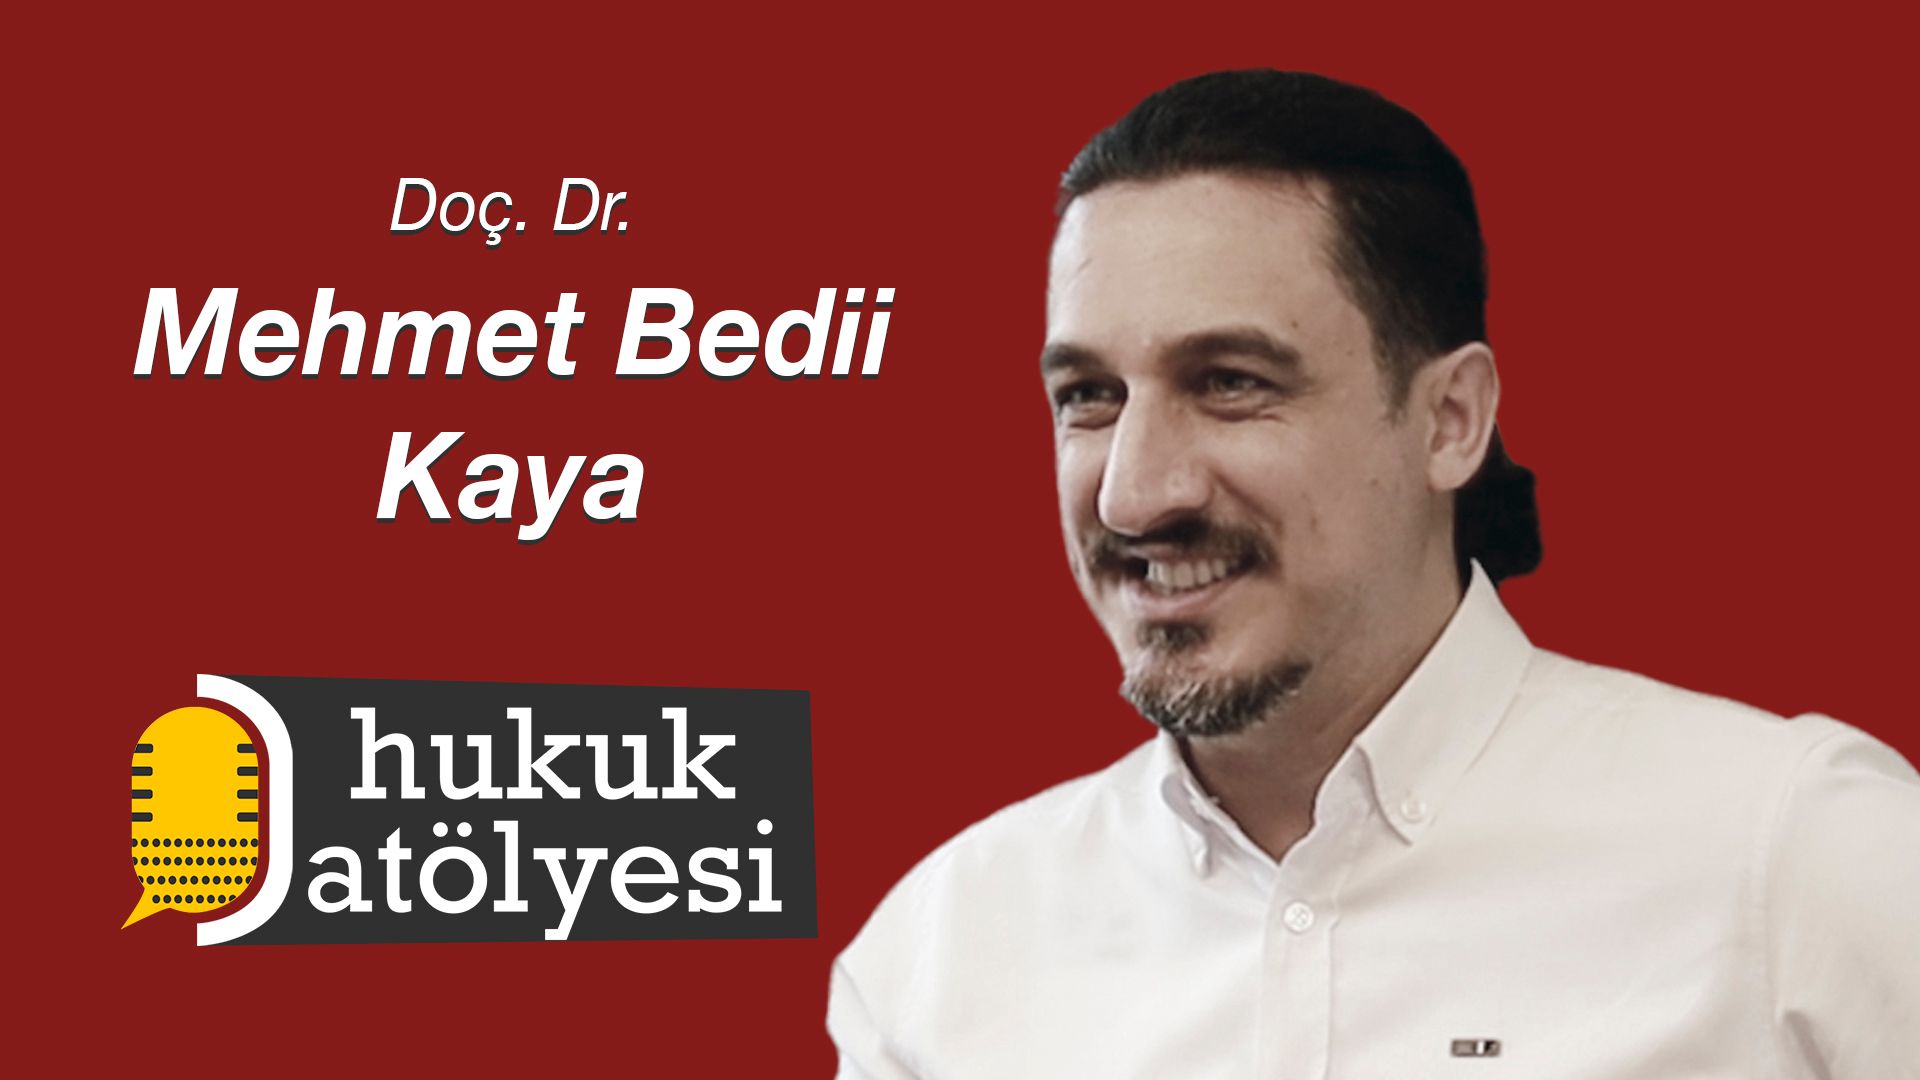 Hukuk Atölyesi'nin 21. Bölüm Konuğu: Doç. Dr. Mehmet Bedii Kaya